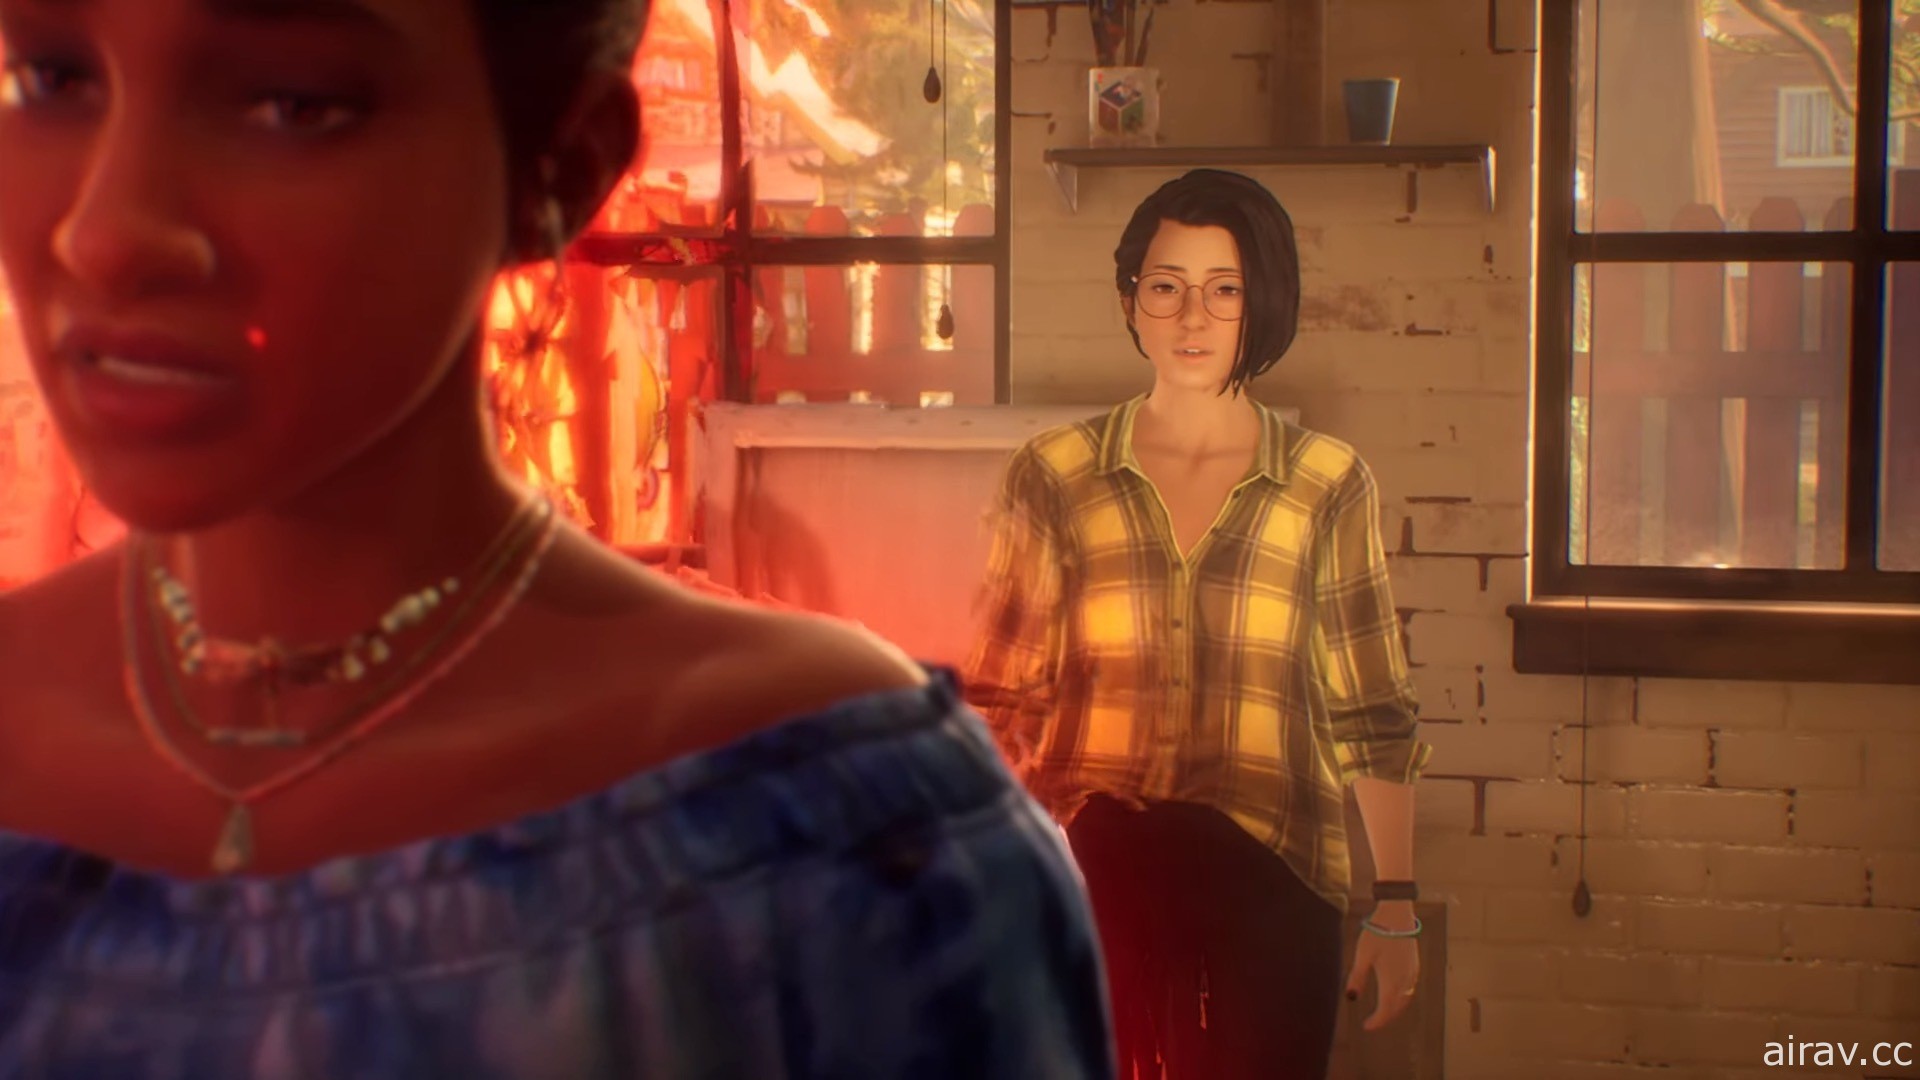 【E3 21】《奇异人生：本色》释出最新预告 一窥主角的“同理心”超能力